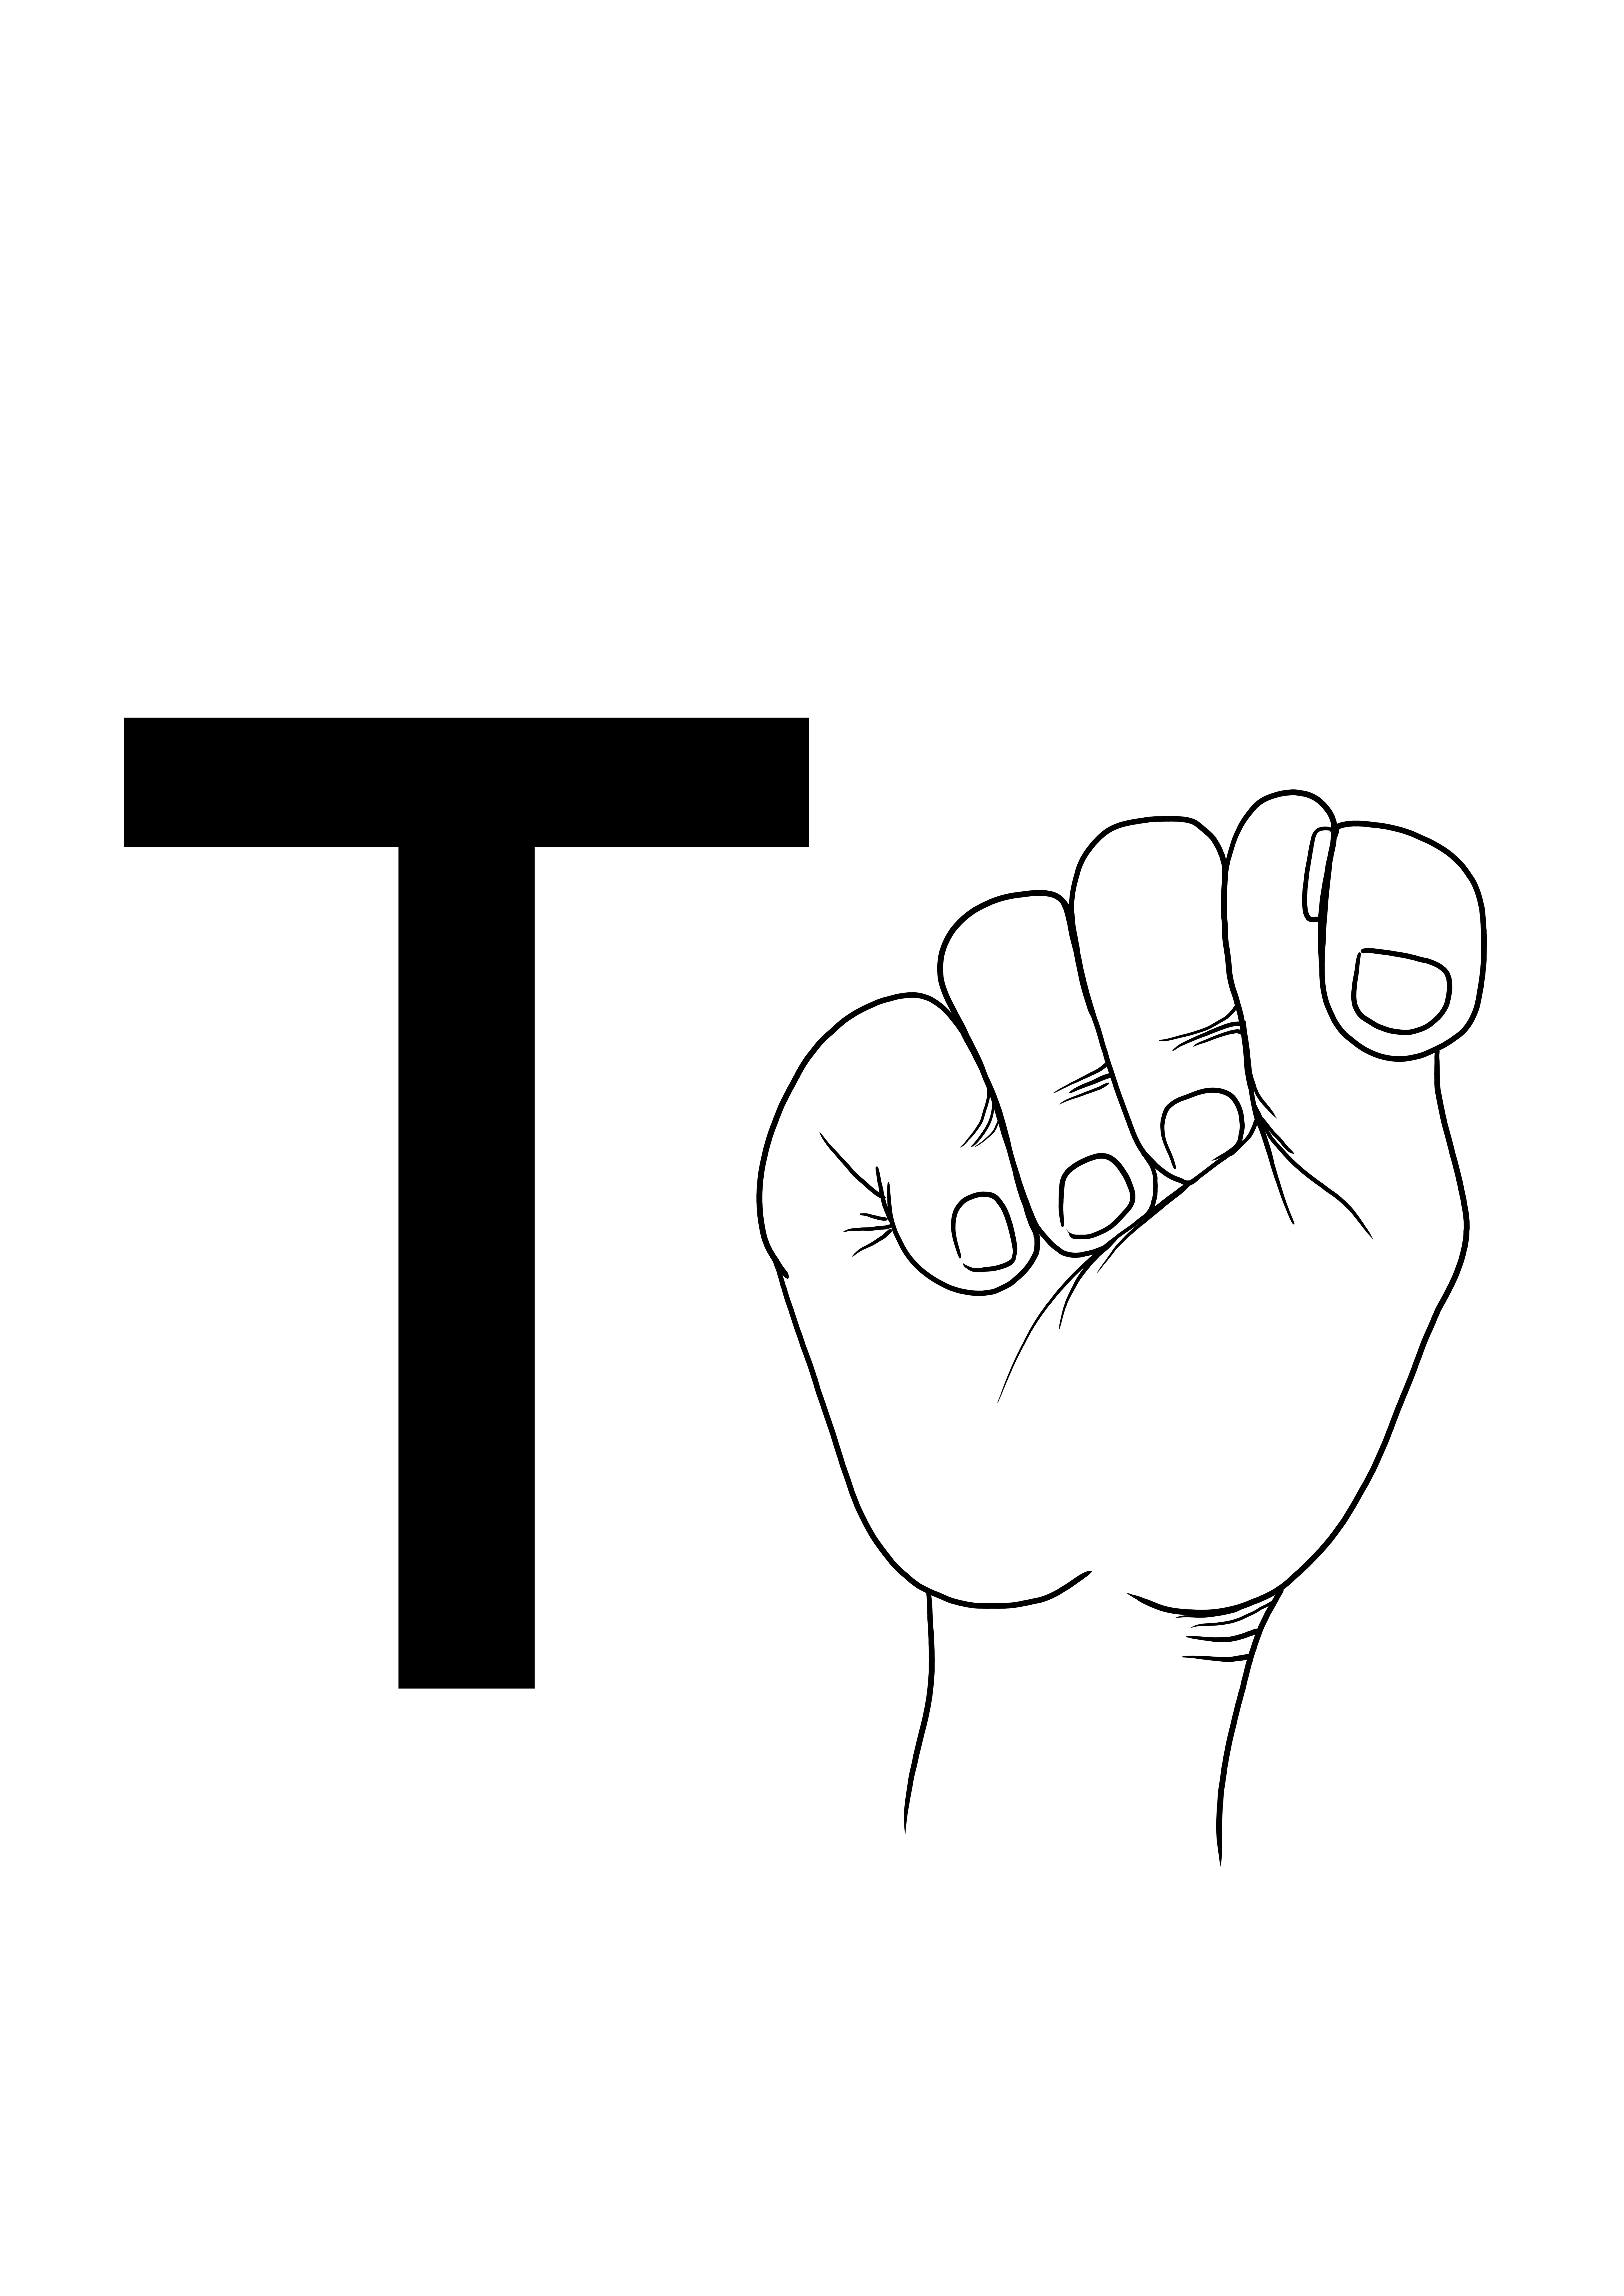 ASL-kirjain T-arkki väritettynä ja ladattavissa ilmaiseksi